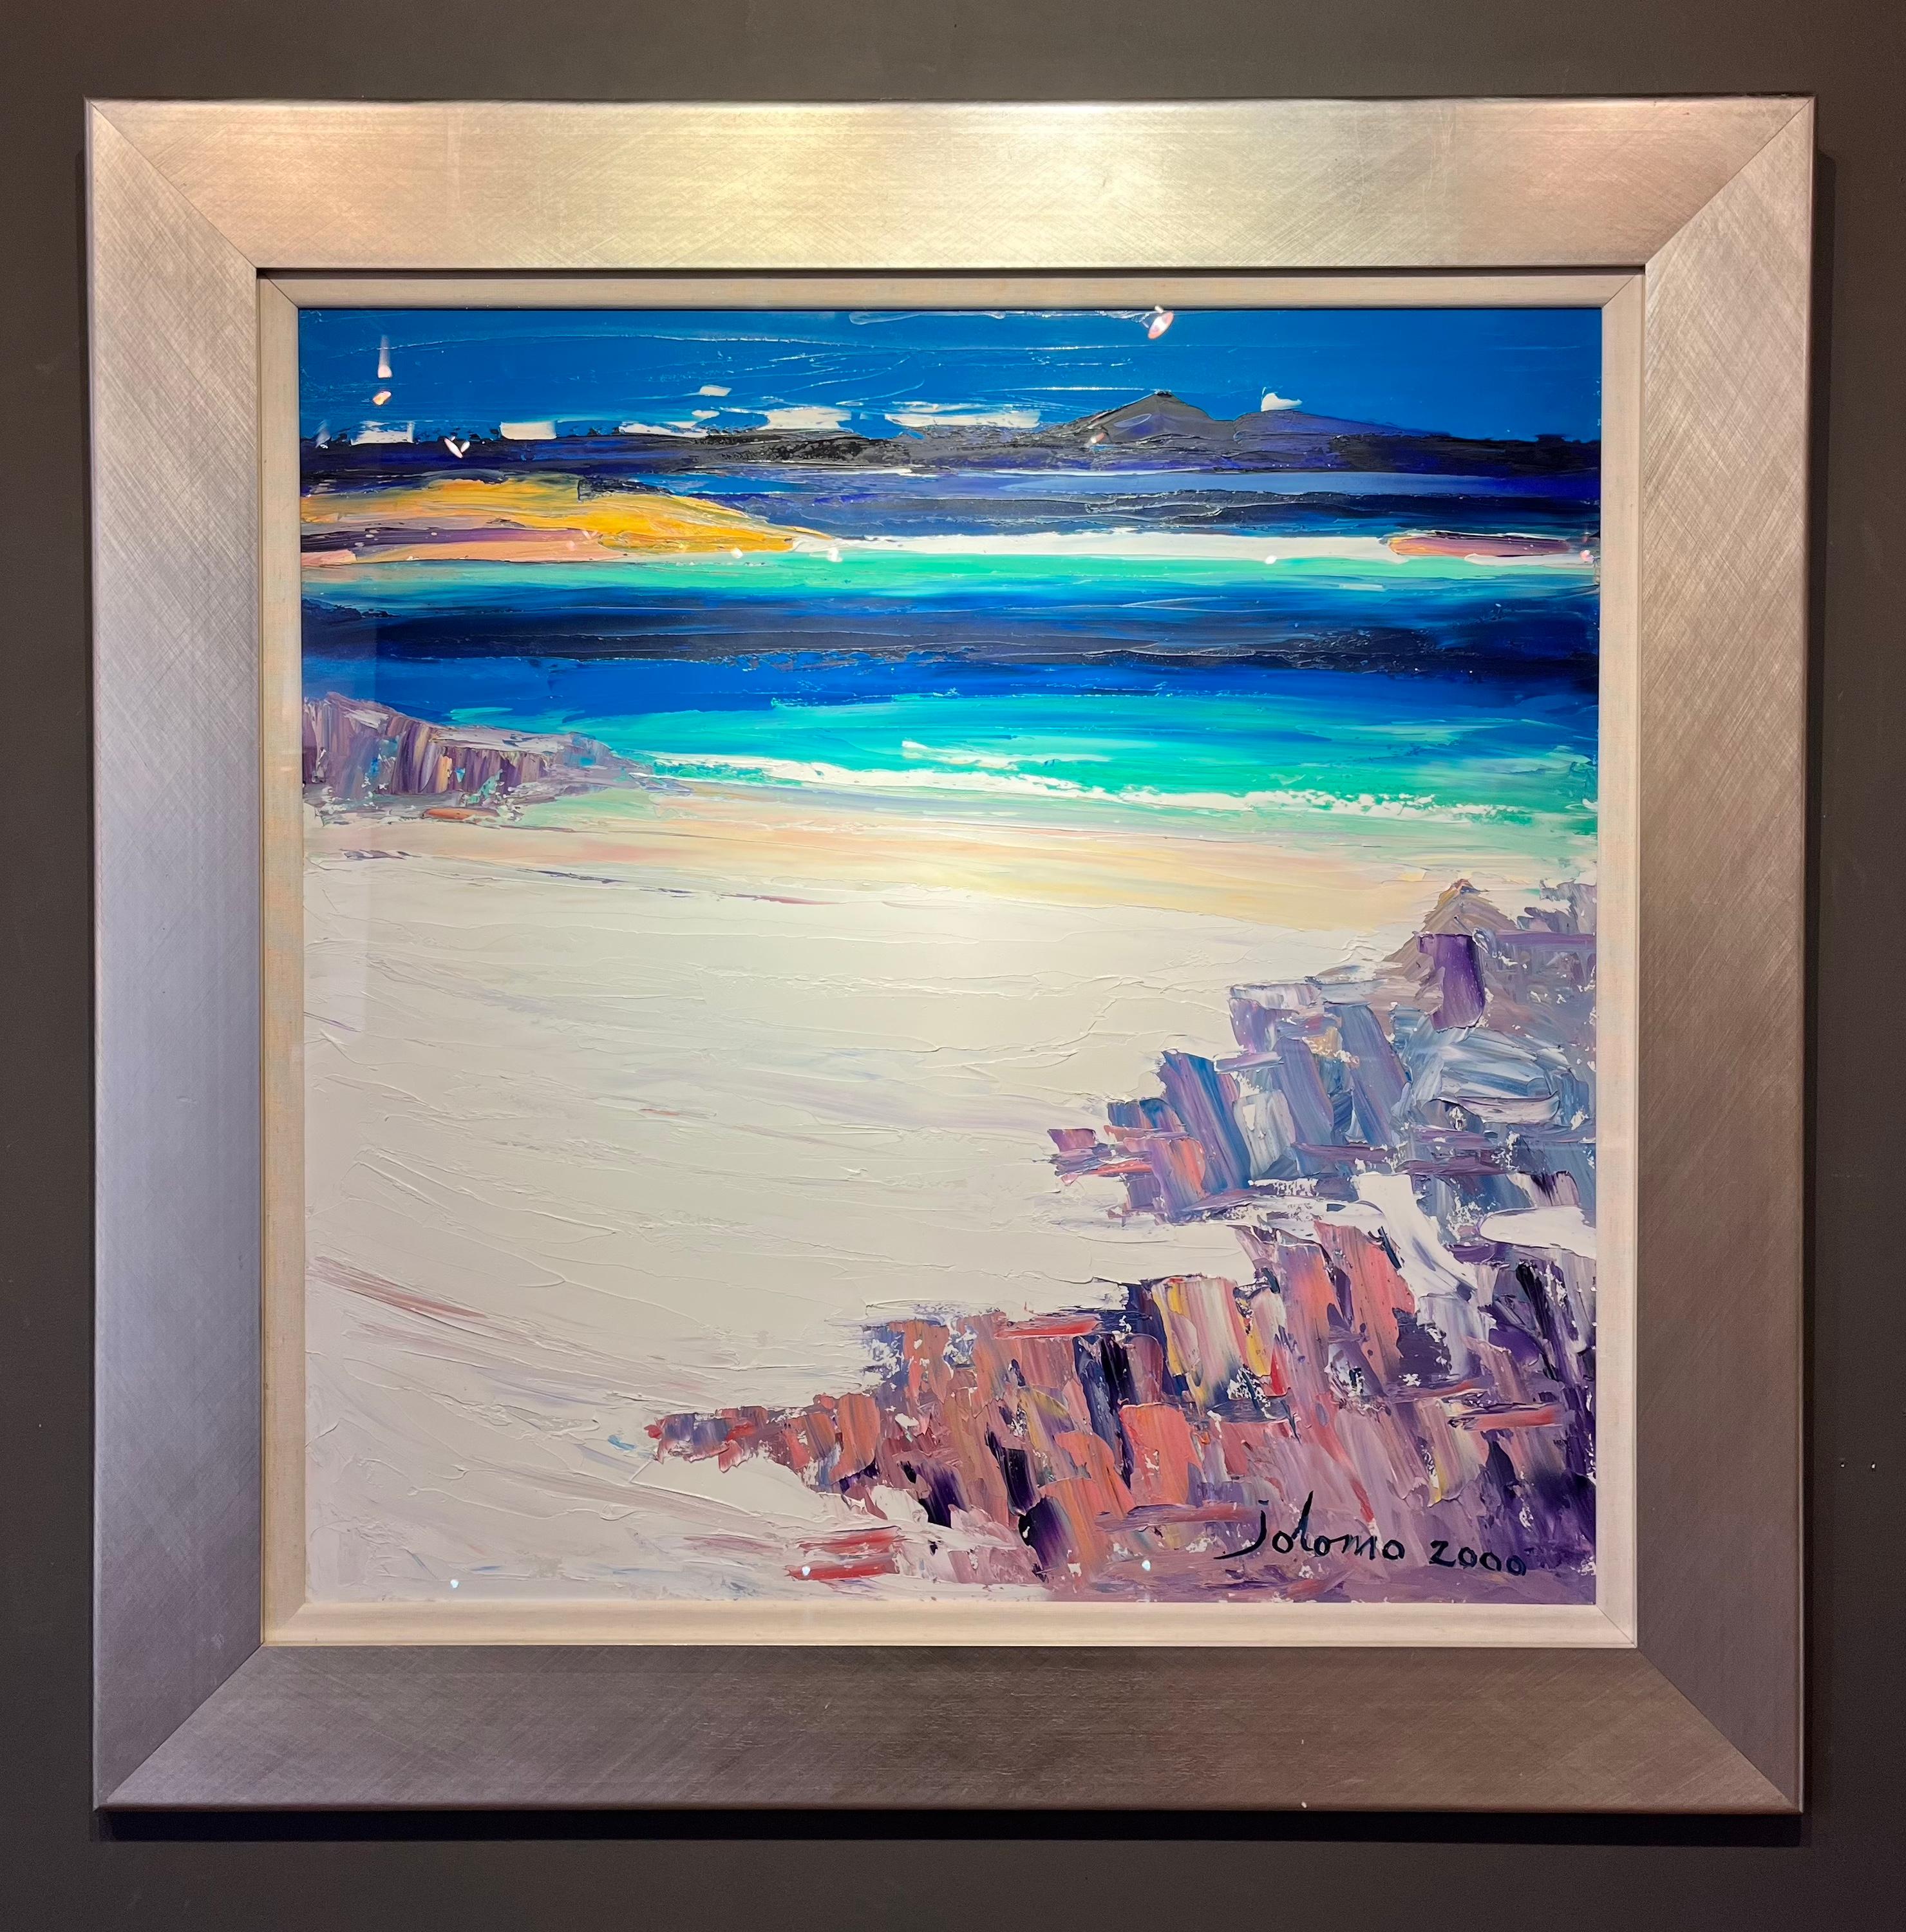 Landscape Painting John Lowrie Morrison - « White Beach Iona », peinture de paysage marin écossais d'une plage, d'une mer bleue et de roches